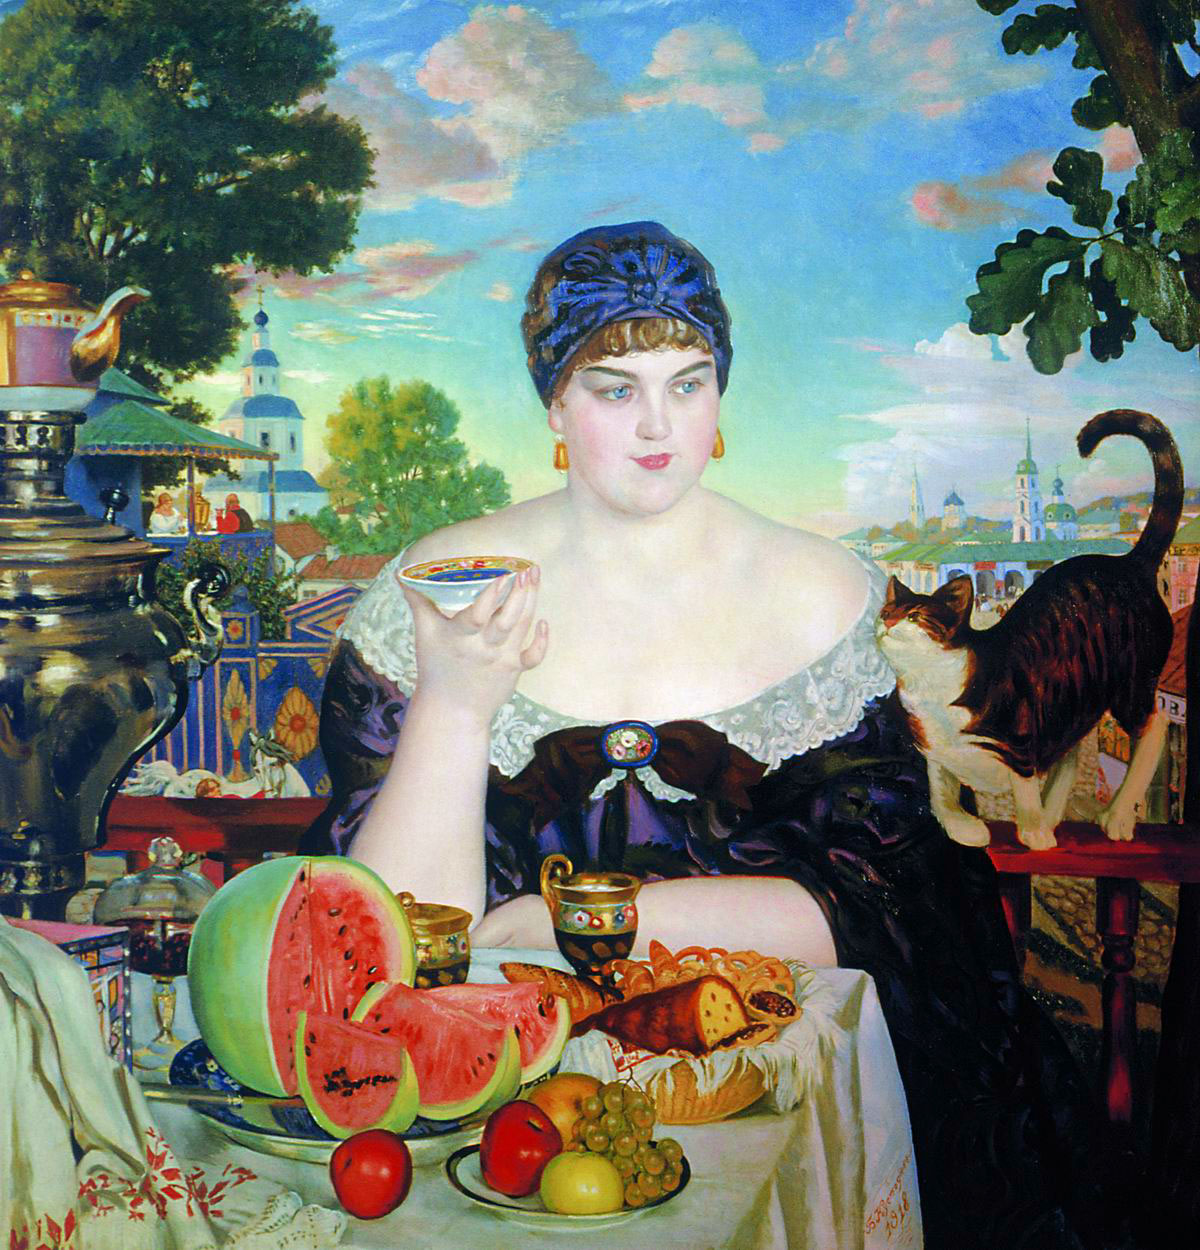 Boris Kustotiev stvorio je karakterističnu vrstu Ruskinja u slikarstvu: Trgovčeva žena, Djevojka na Volgi, Ljepota. Te slike prožete su autorovim divljenjem, ali i blagom ironijom./Trgovčeva žena pije čaj, Boris Kustodiev, 1918.